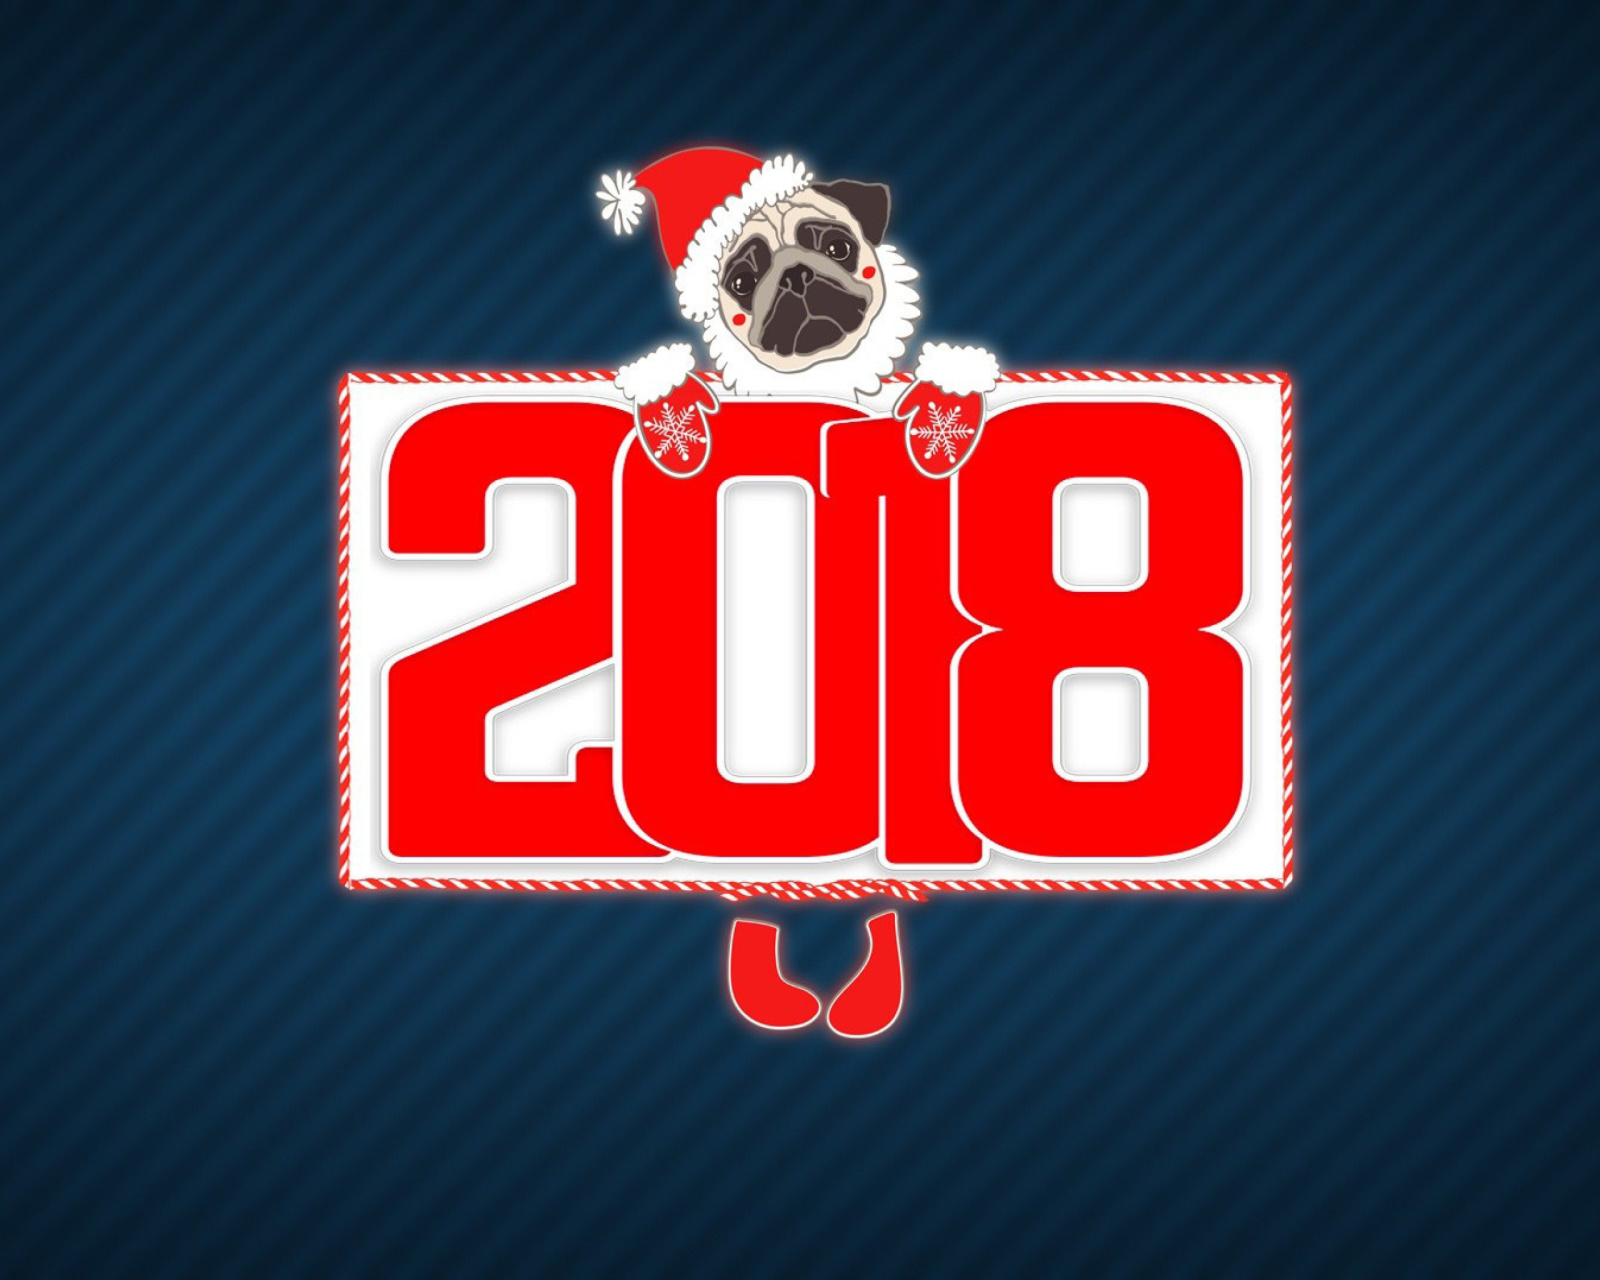 2018 New Year Chinese horoscope year of the Dog screenshot #1 1600x1280